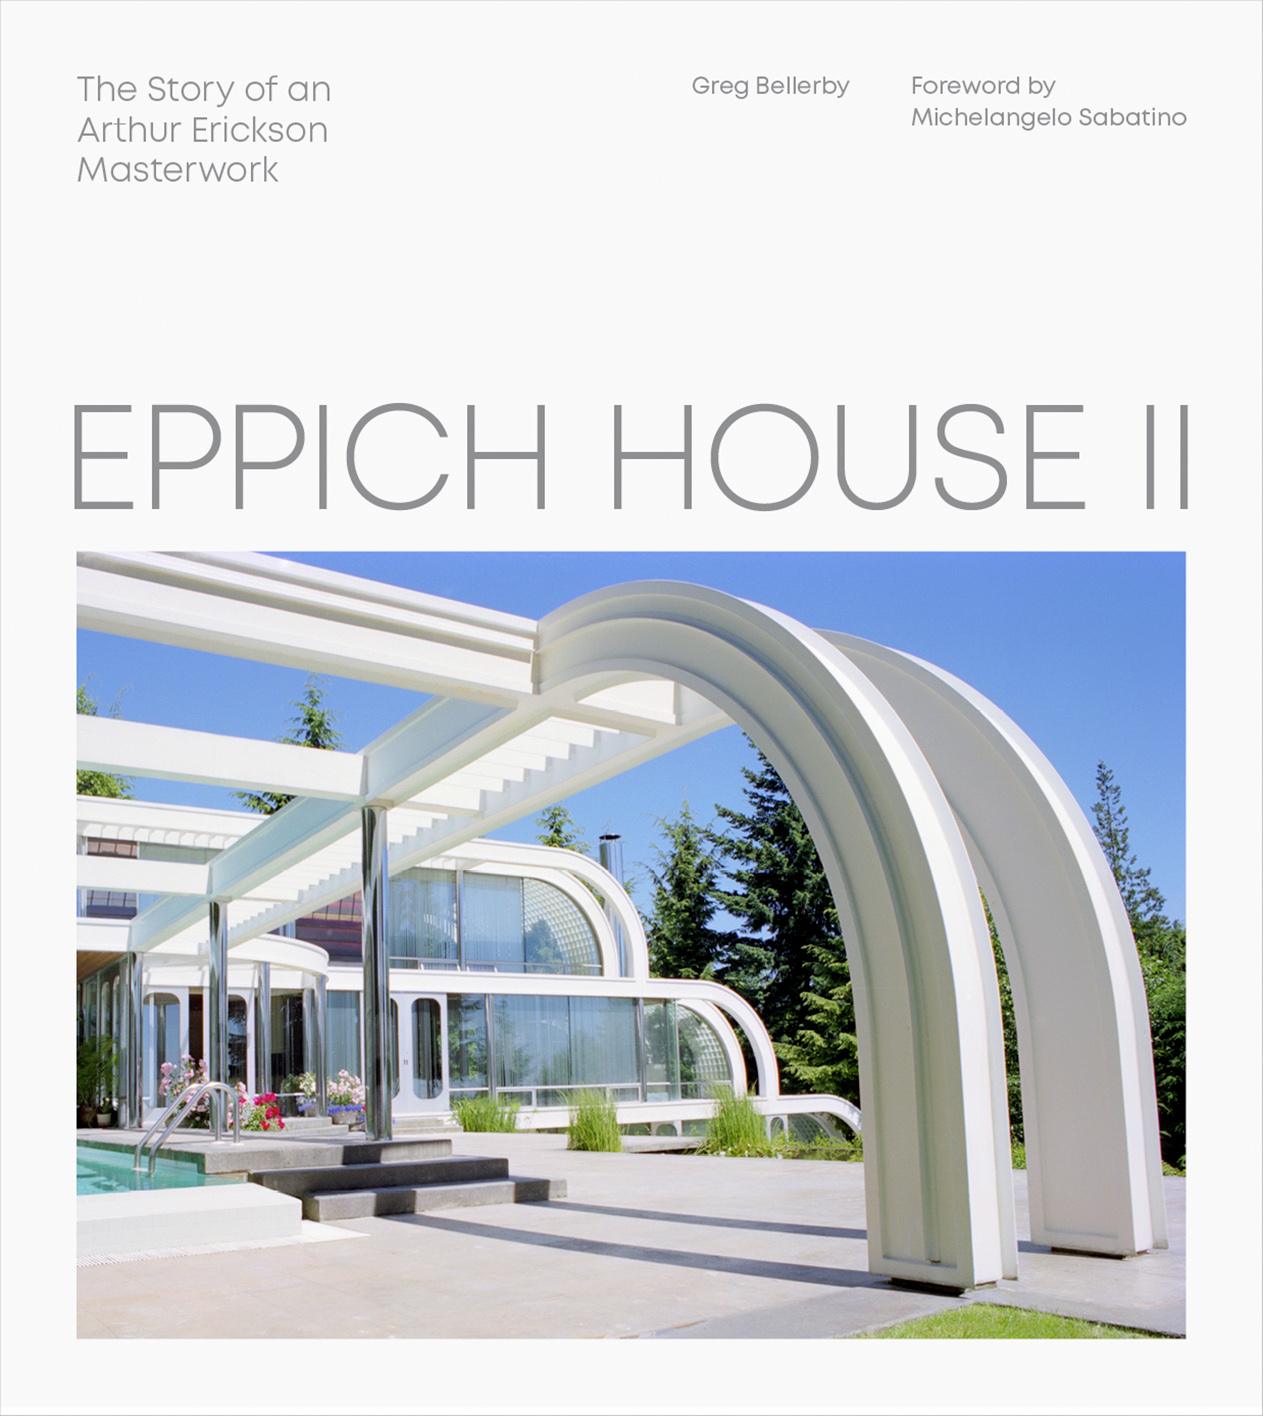 Eppich House II